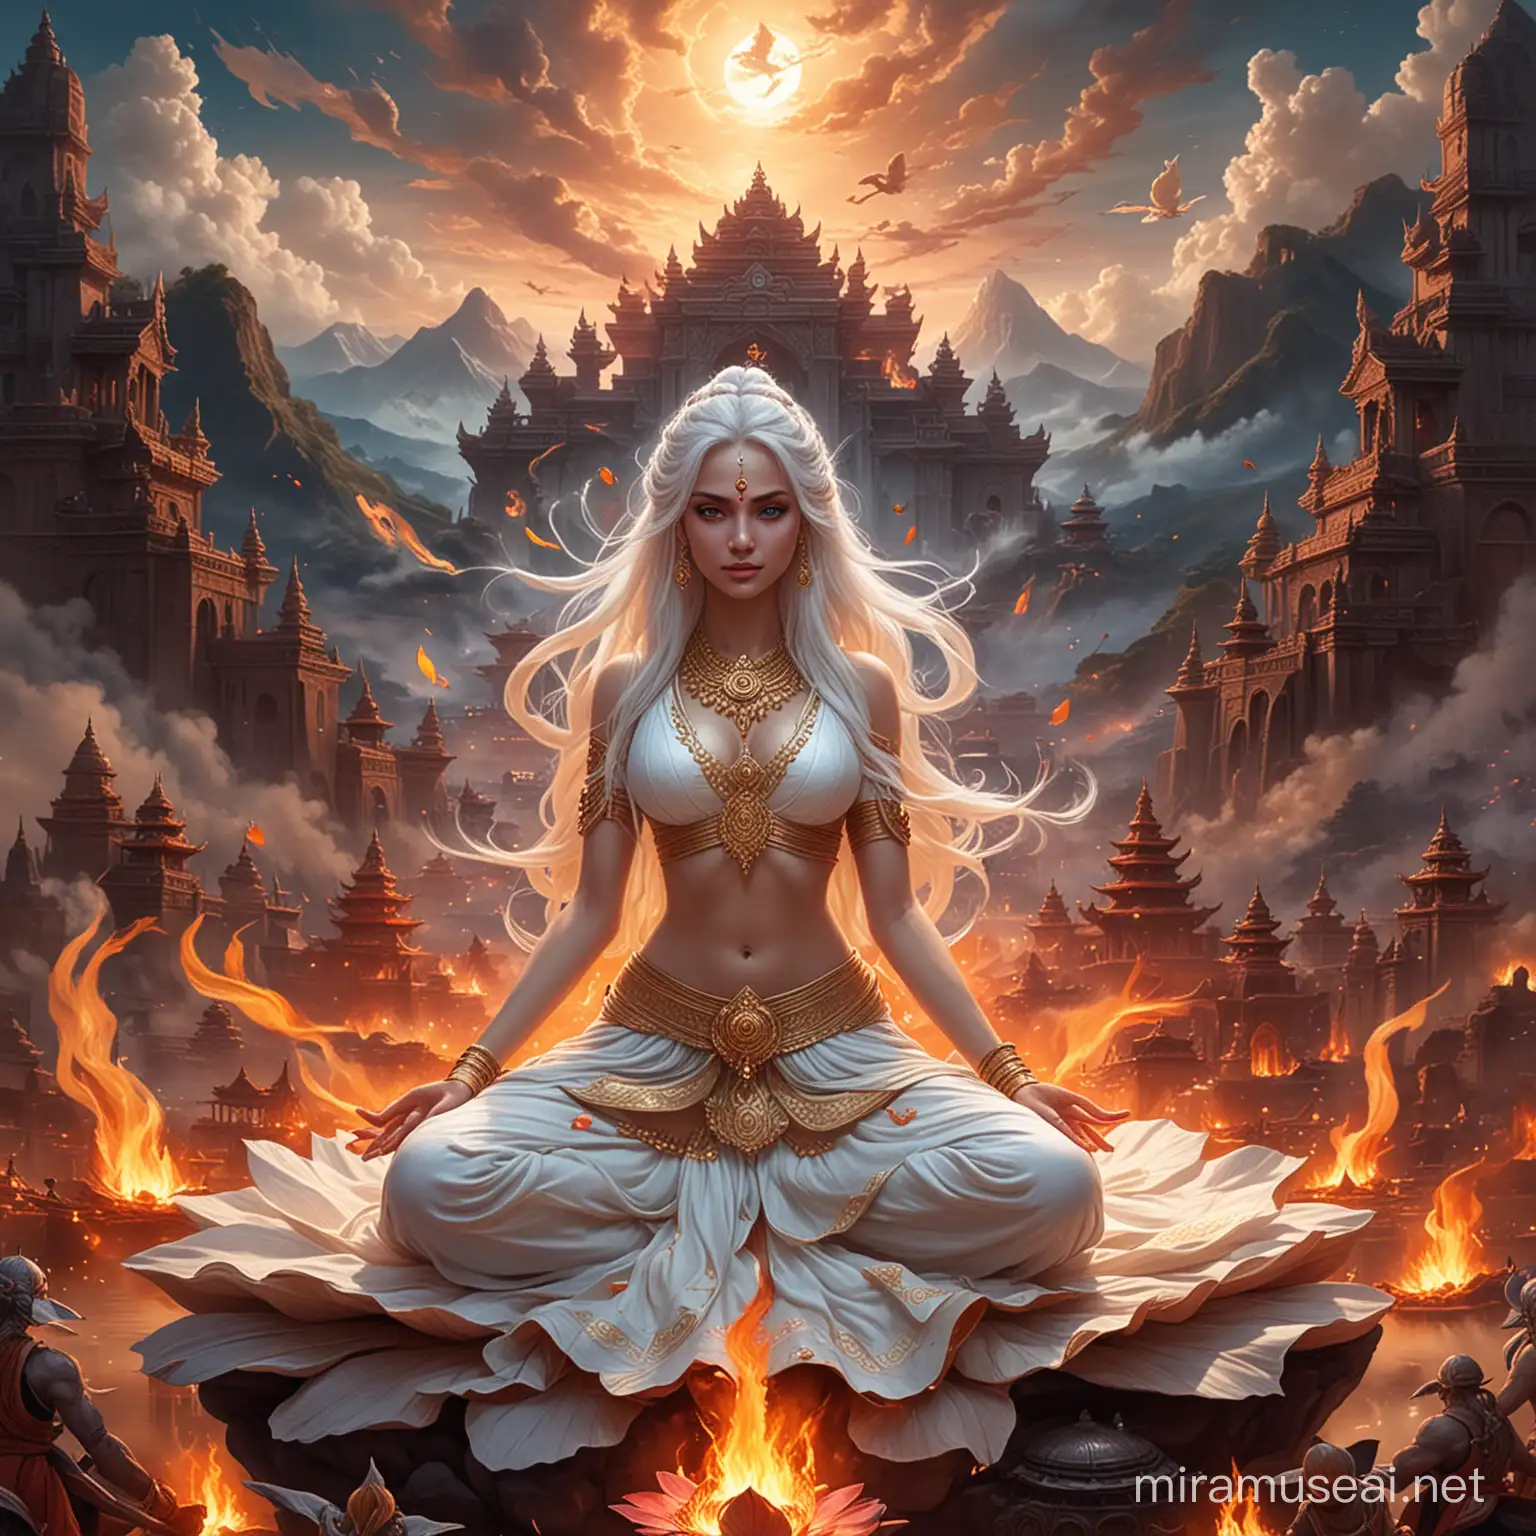 Majestic Hindu Empress in Lotus Position Amidst Fiery Battle